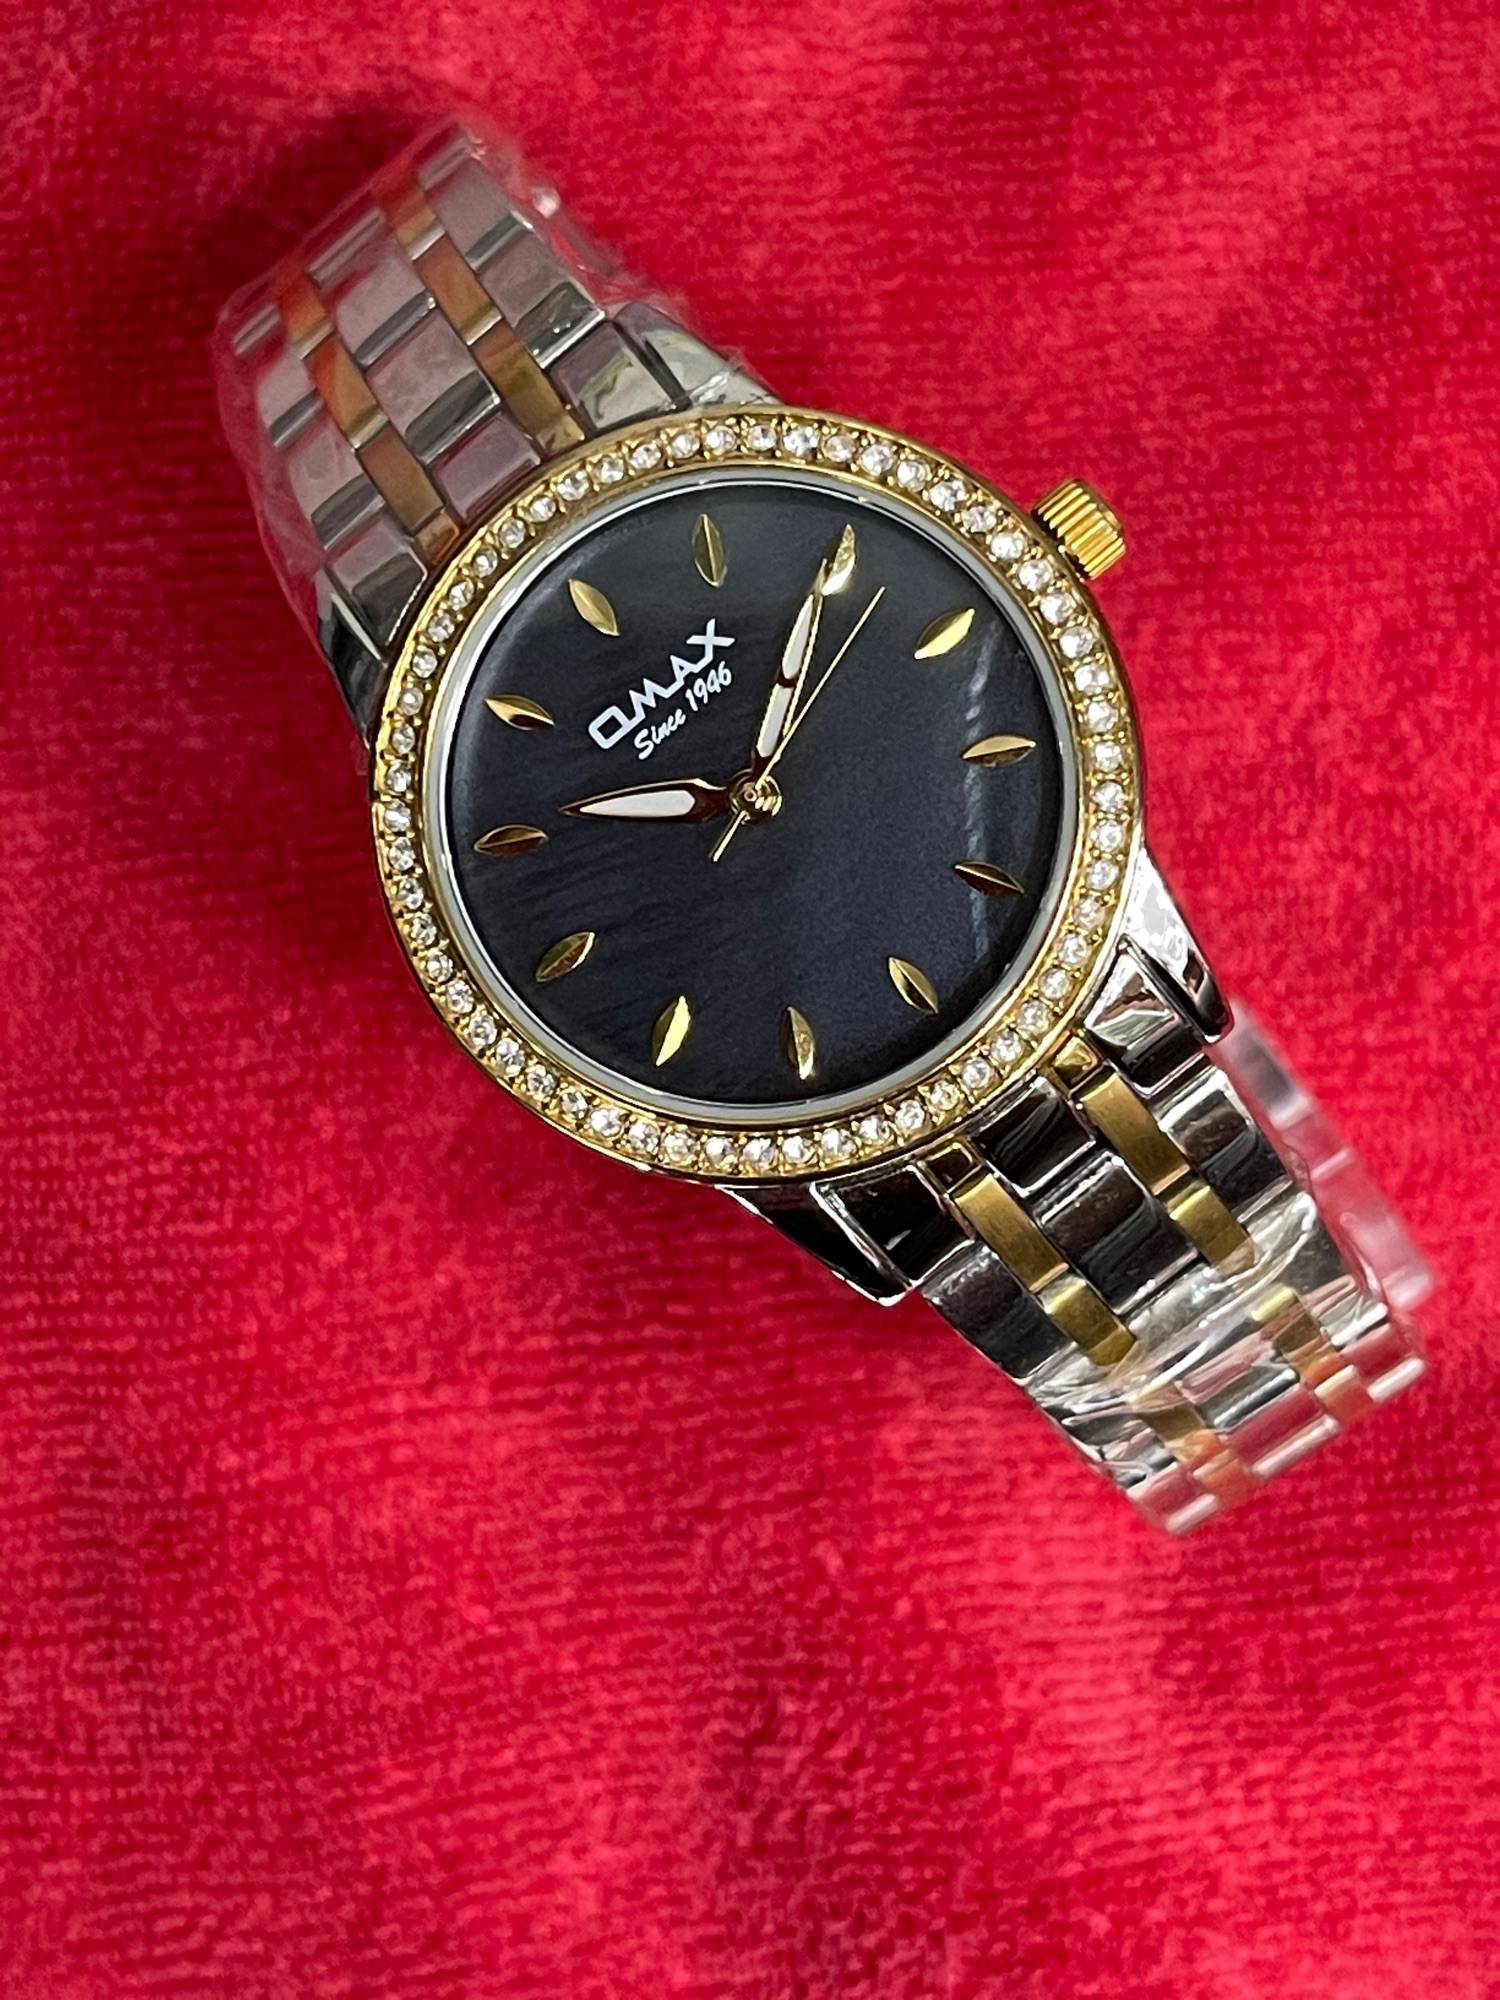 Elegant Stylish omax watch men - Alibaba.com-sonthuy.vn